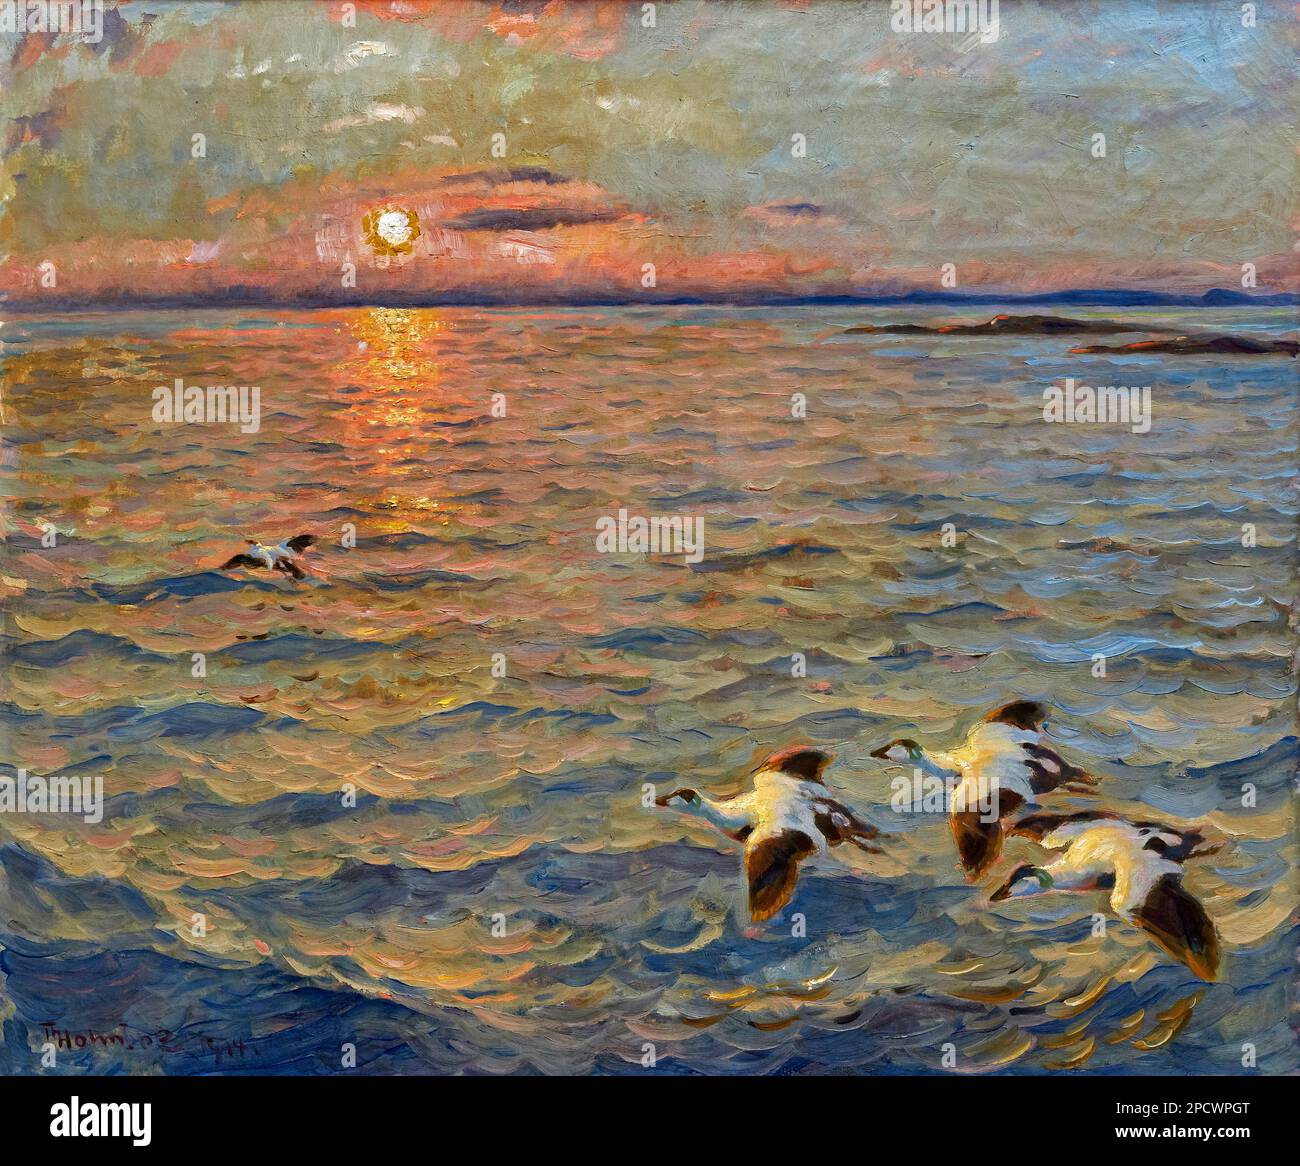 Tramonto sul mare in Norvegia  -  olio su tela - Thorolf Holmboe  - 1914 - Piacenza, Galleria Ricci Oddi Stock Photo